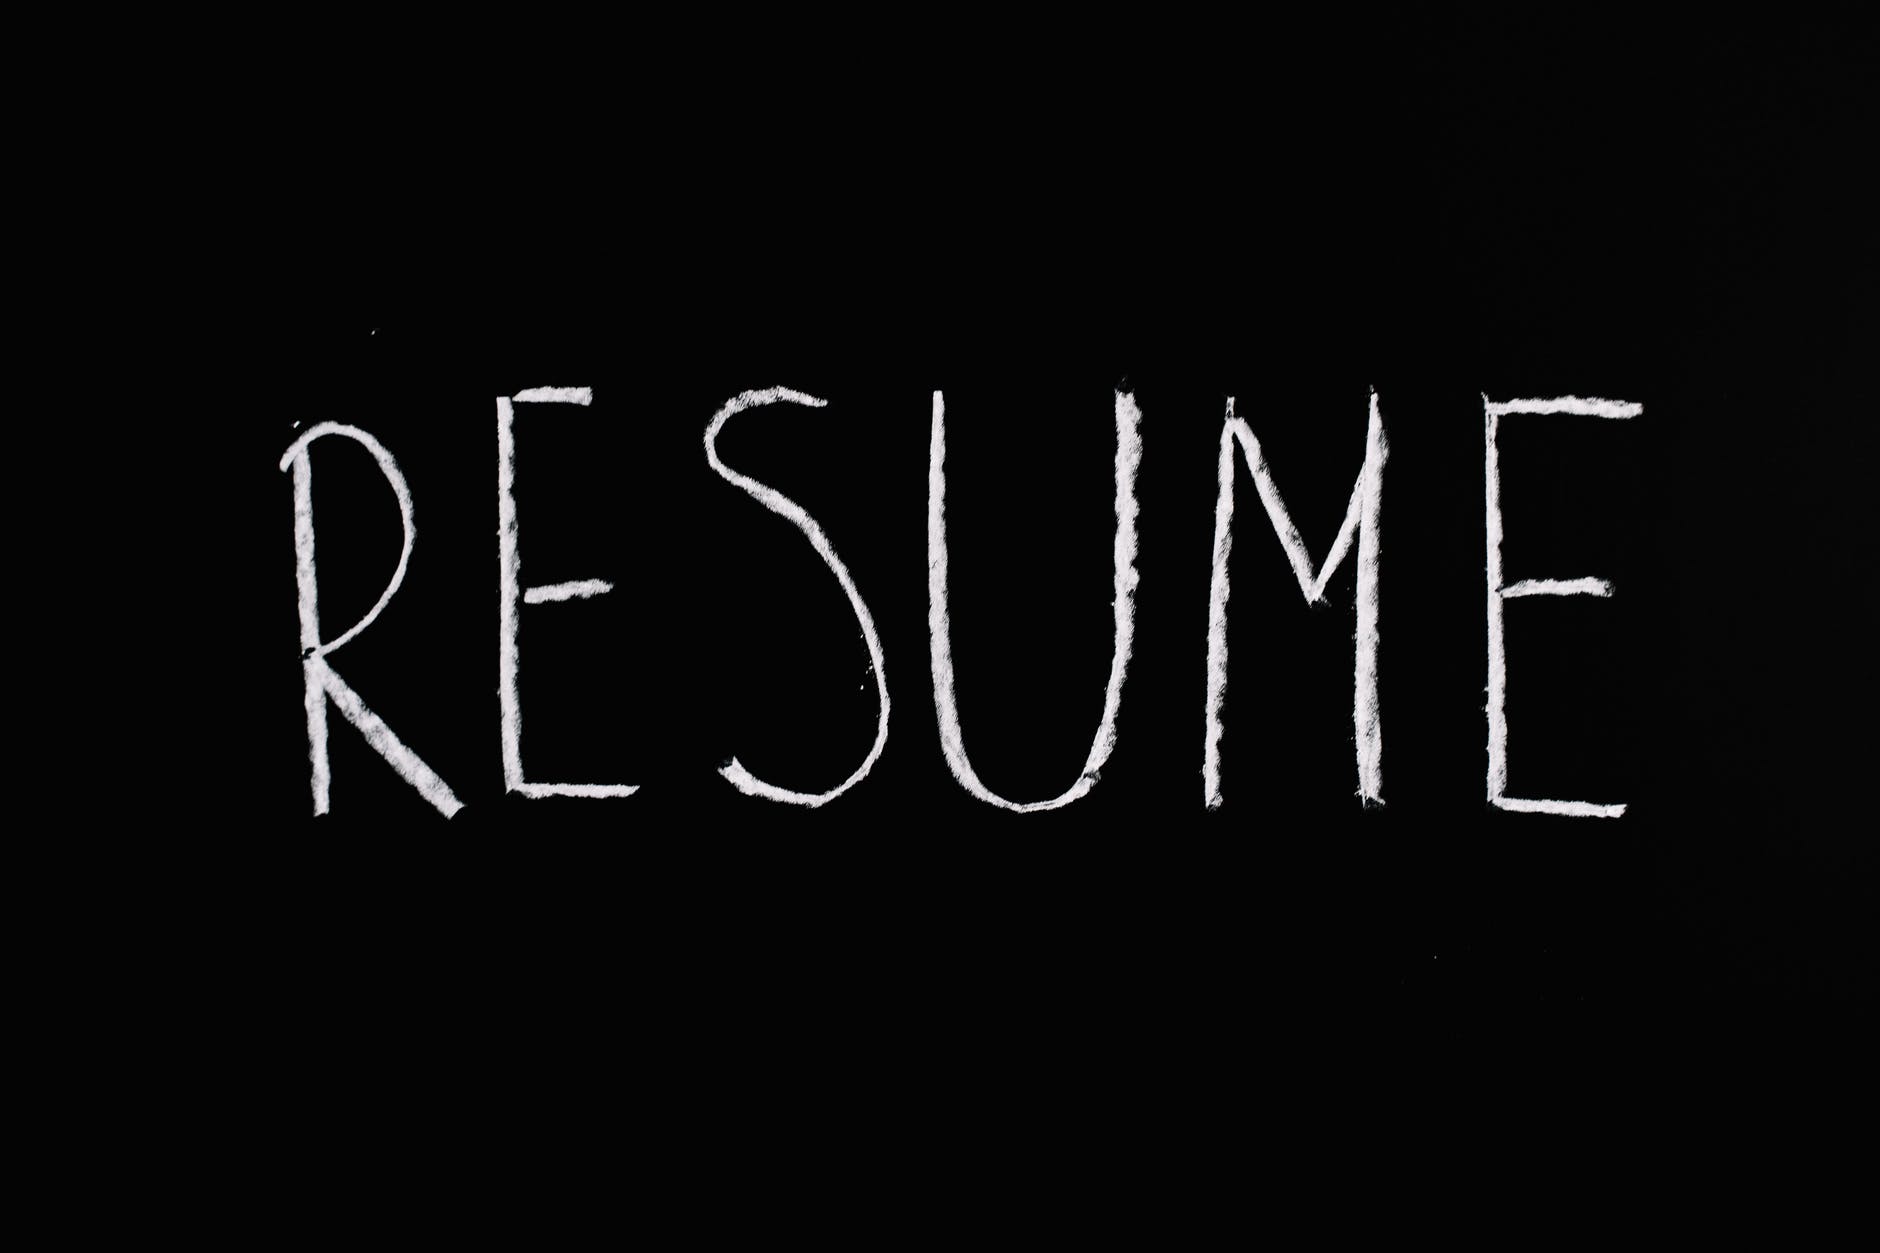 the word 'resume' written on a chalkboard